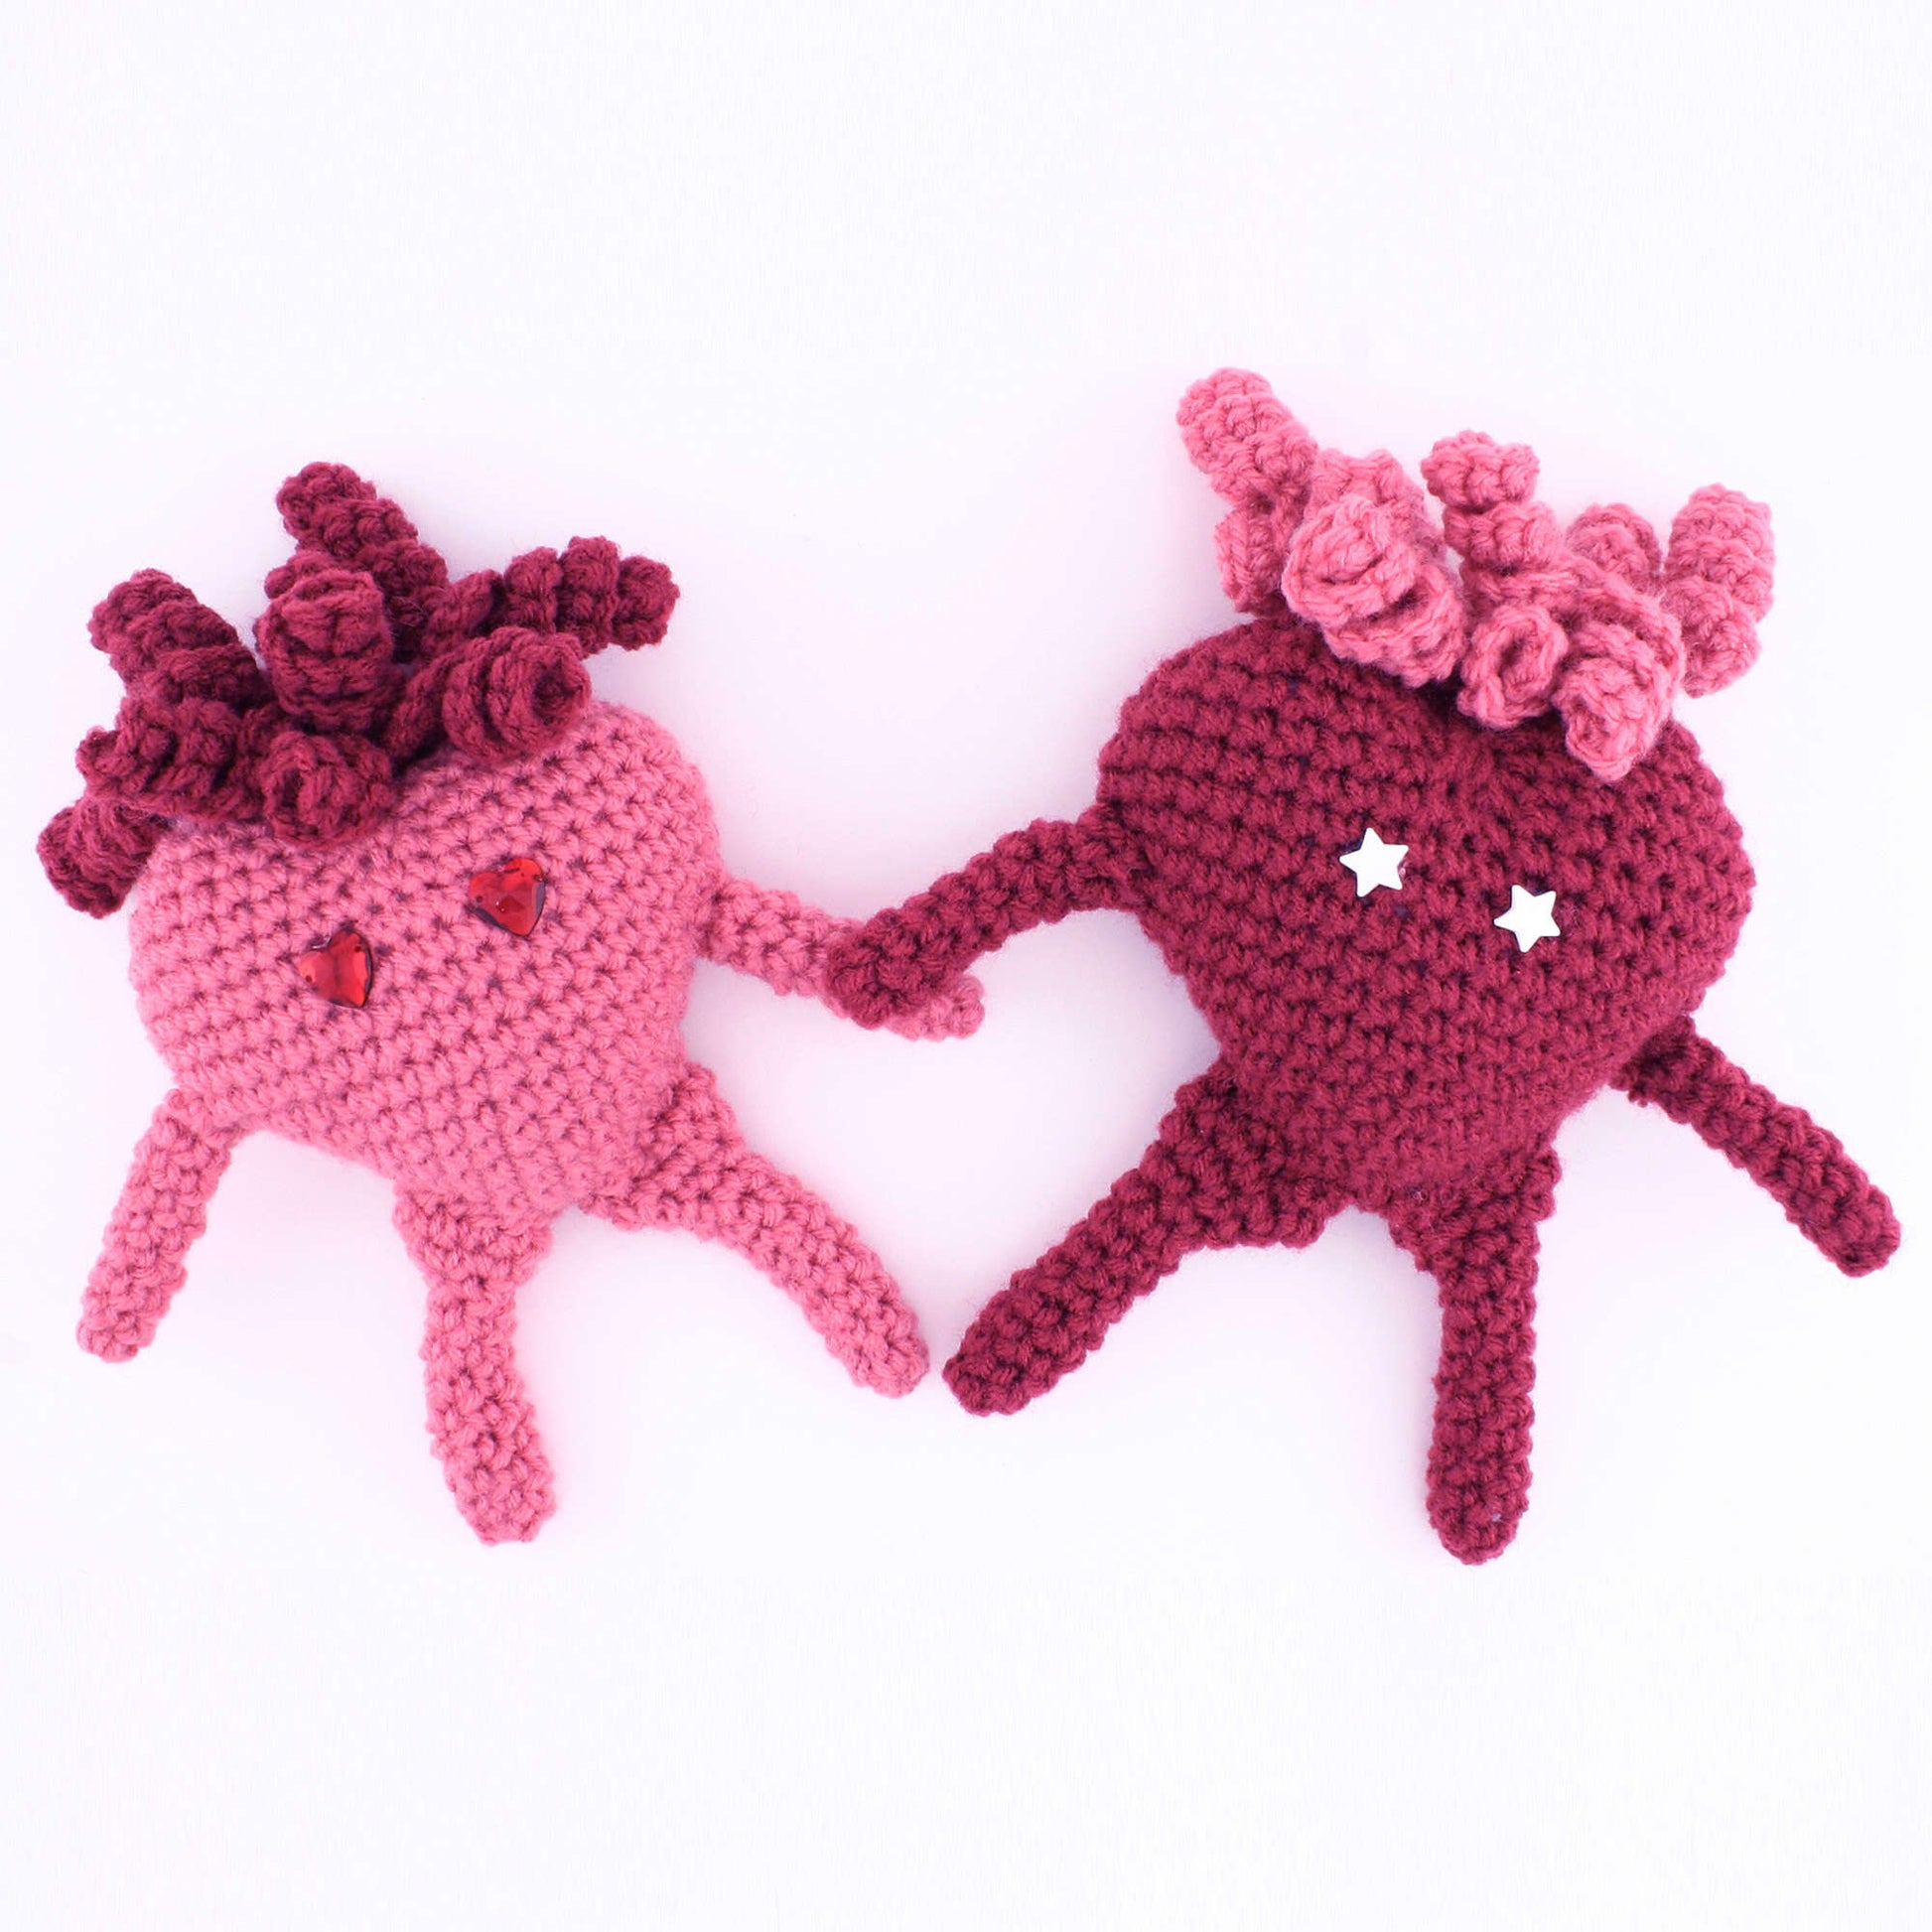 Free Red Heart Crochet Amigurumi Heart Pattern